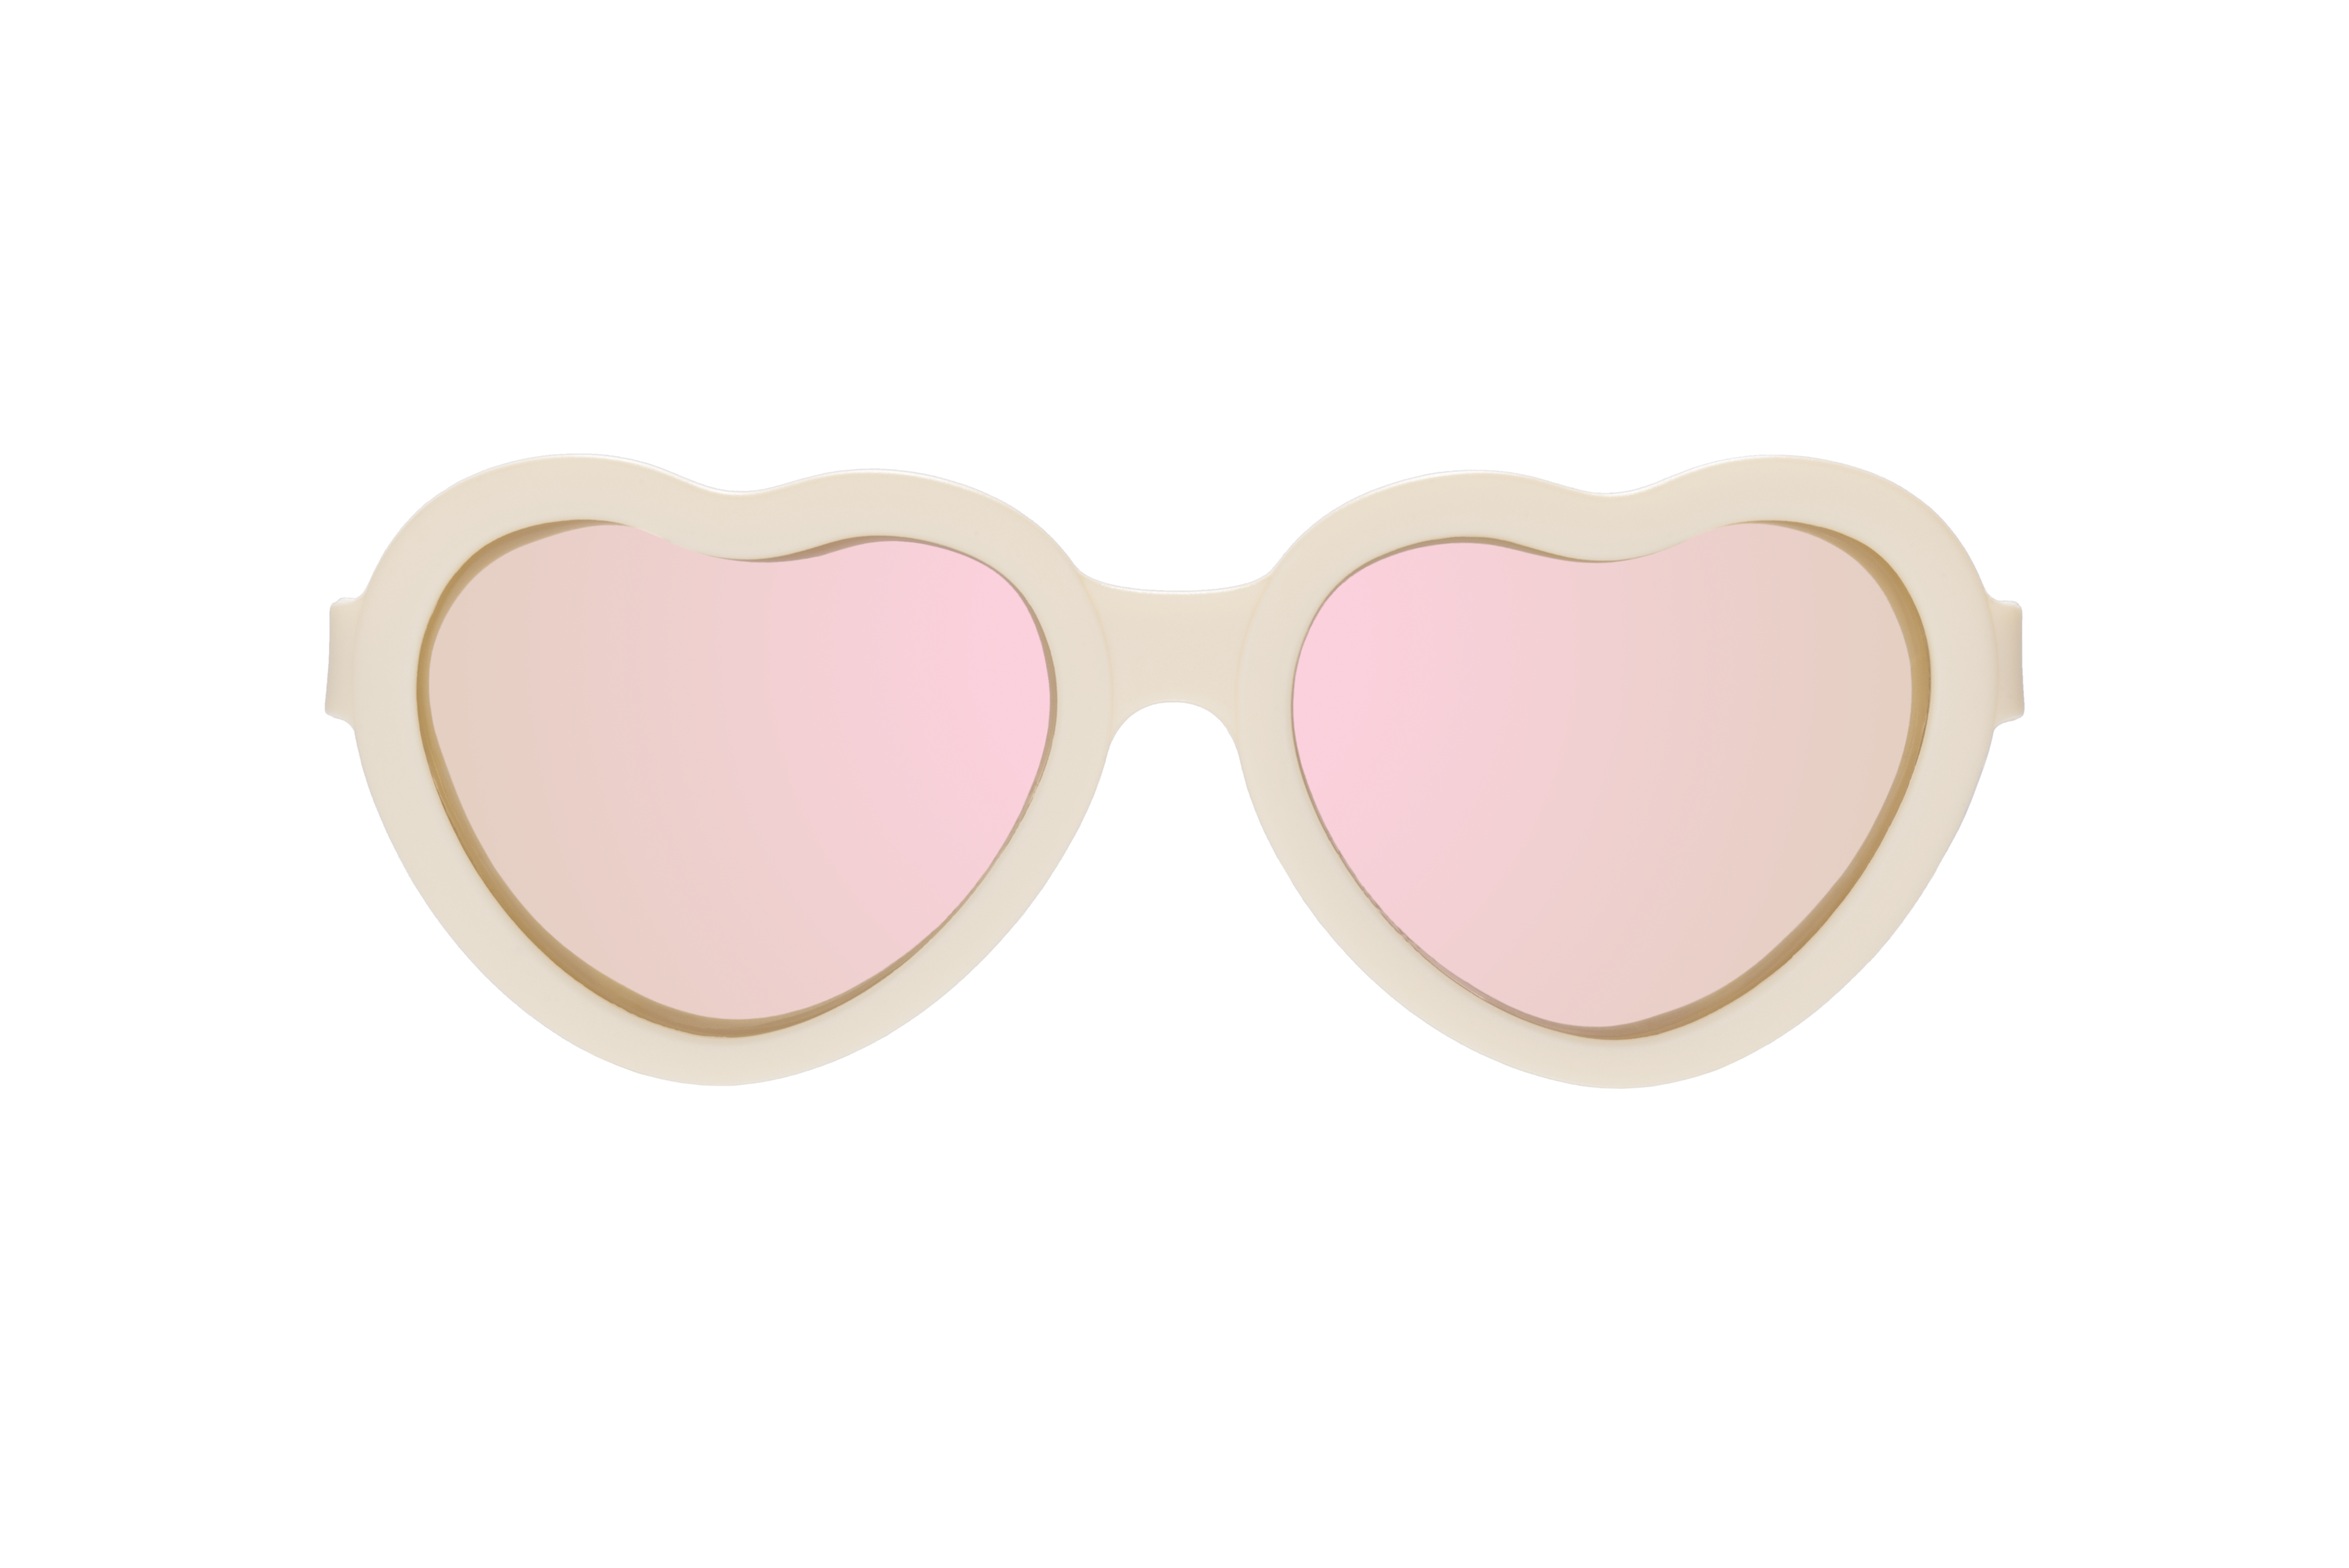 Babiators Heart, polarizační sluneční brýle, krémová, 3-5 let